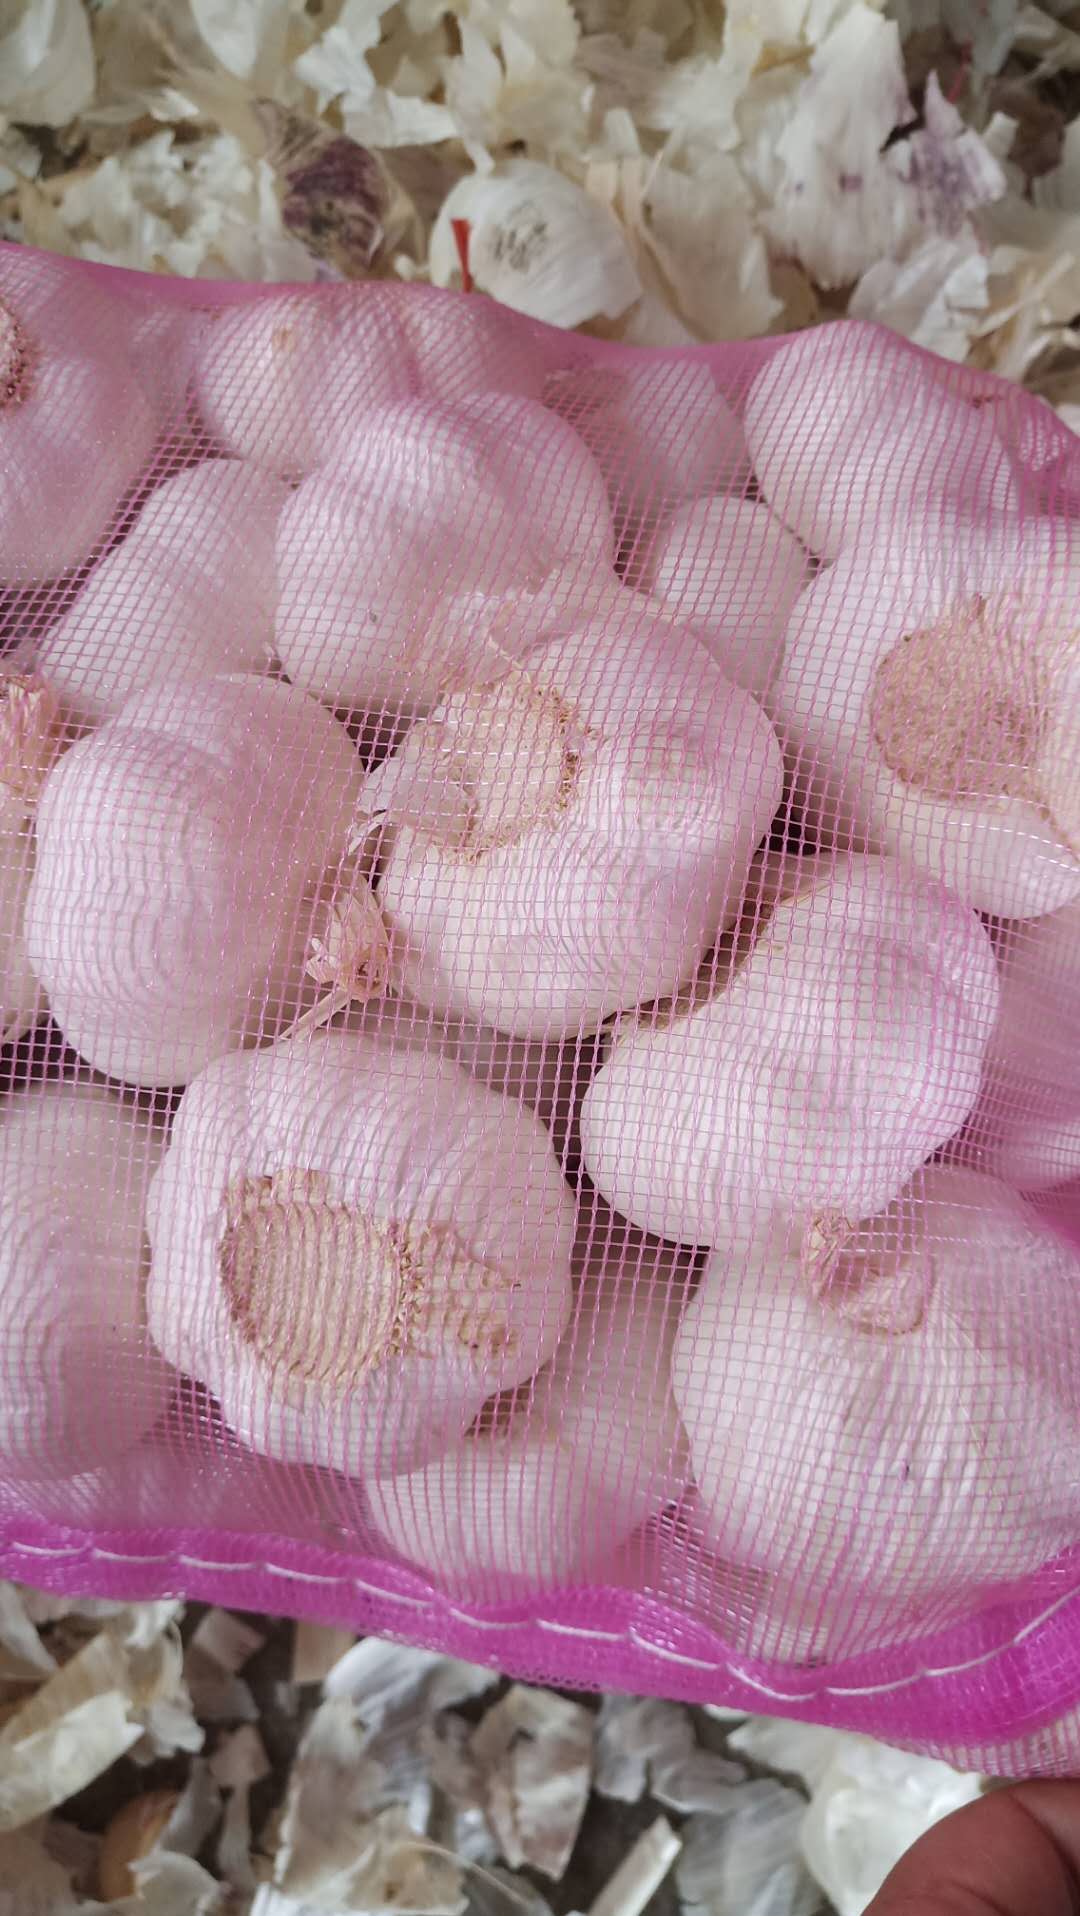 2020 China Fresh Pure White Garlic Export Garlic Bulb Price